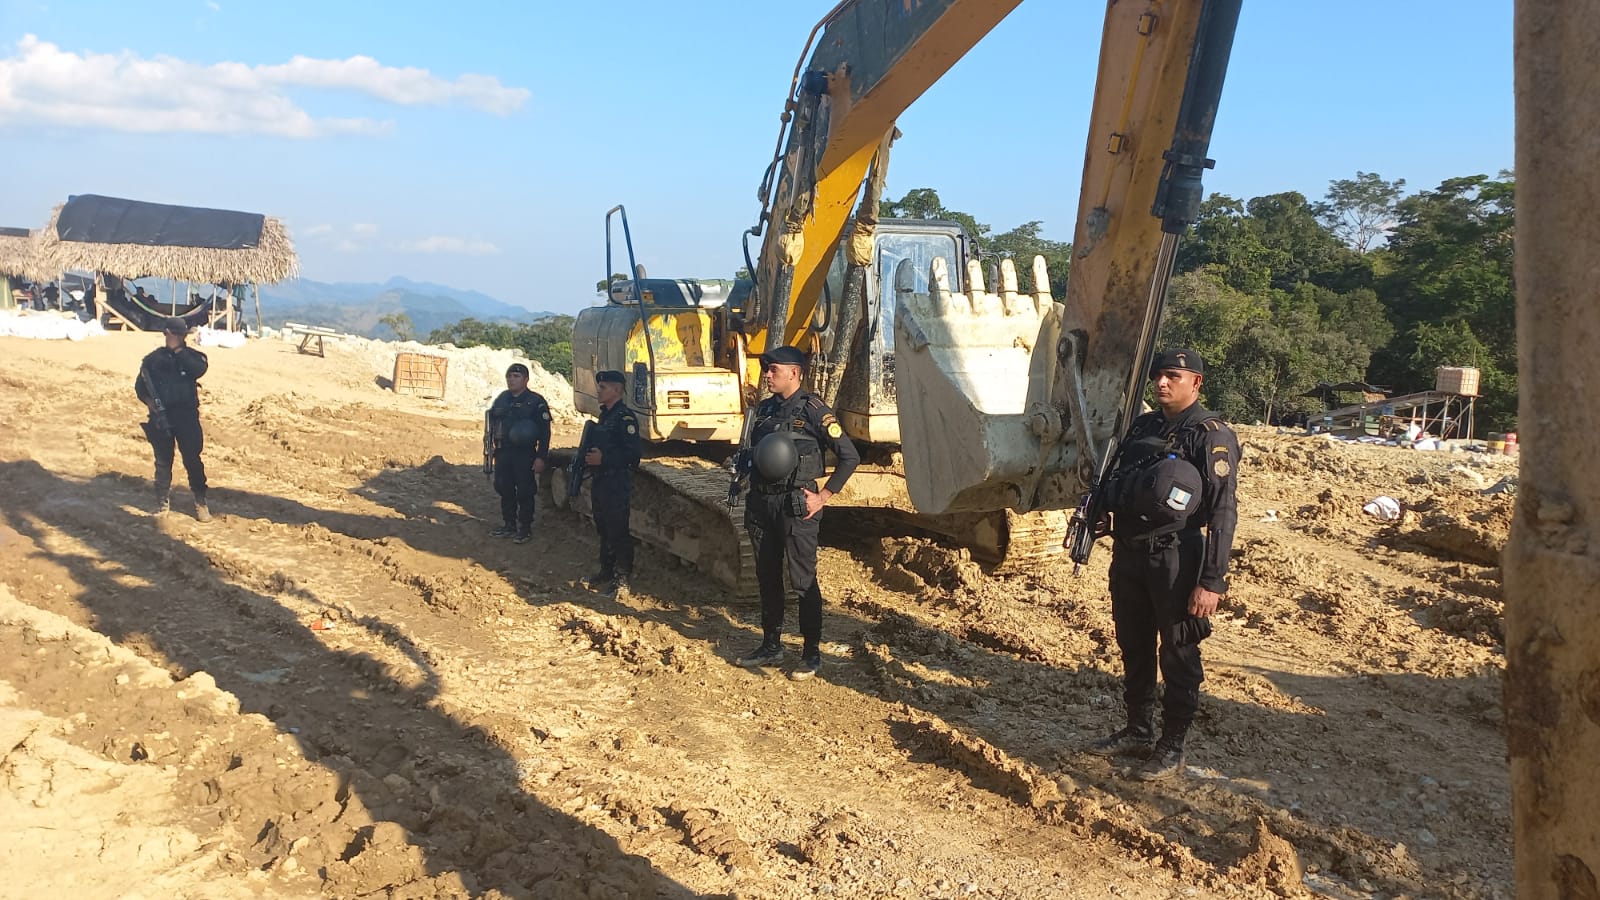 Agentes de la PNC localizaron maquinaria que posiblemente era utilizada para la explotación ilegal de jade, en el área protegida Montaña Chiclero, Morales, Izabal. (Foto Prensa Libre: MP)